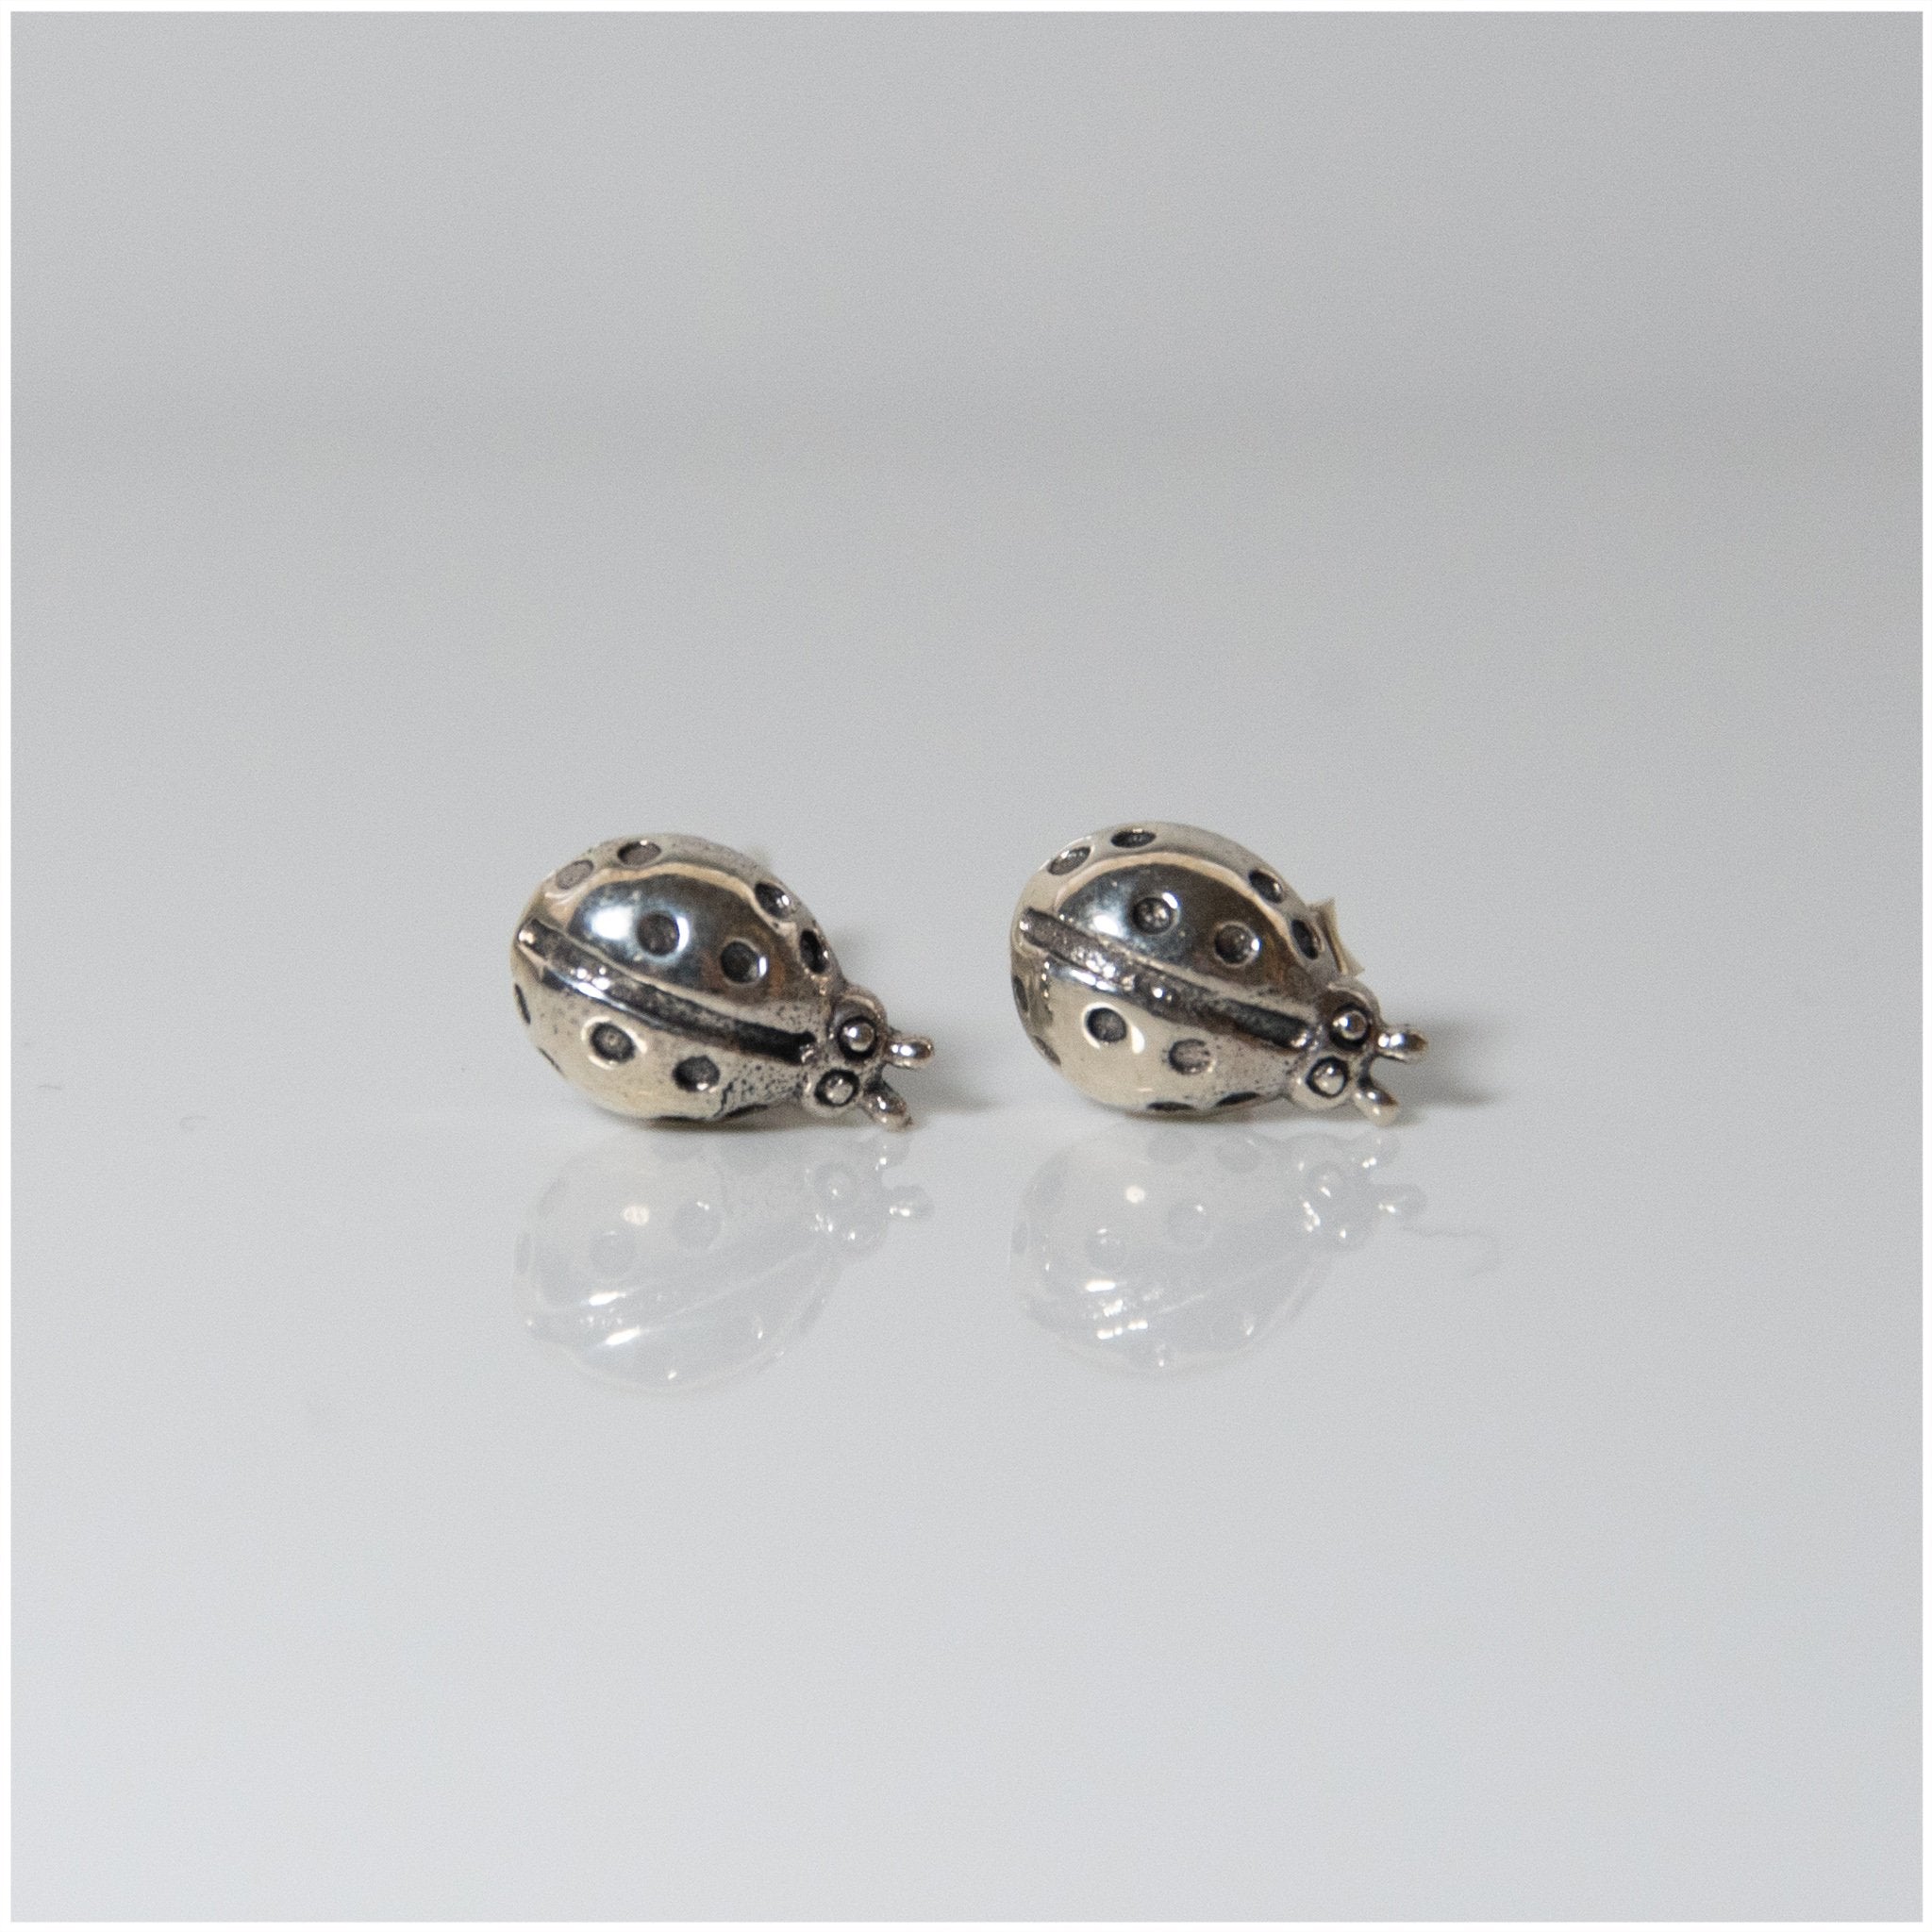 JES003 - Sterling Silver Lady Bug Earrings